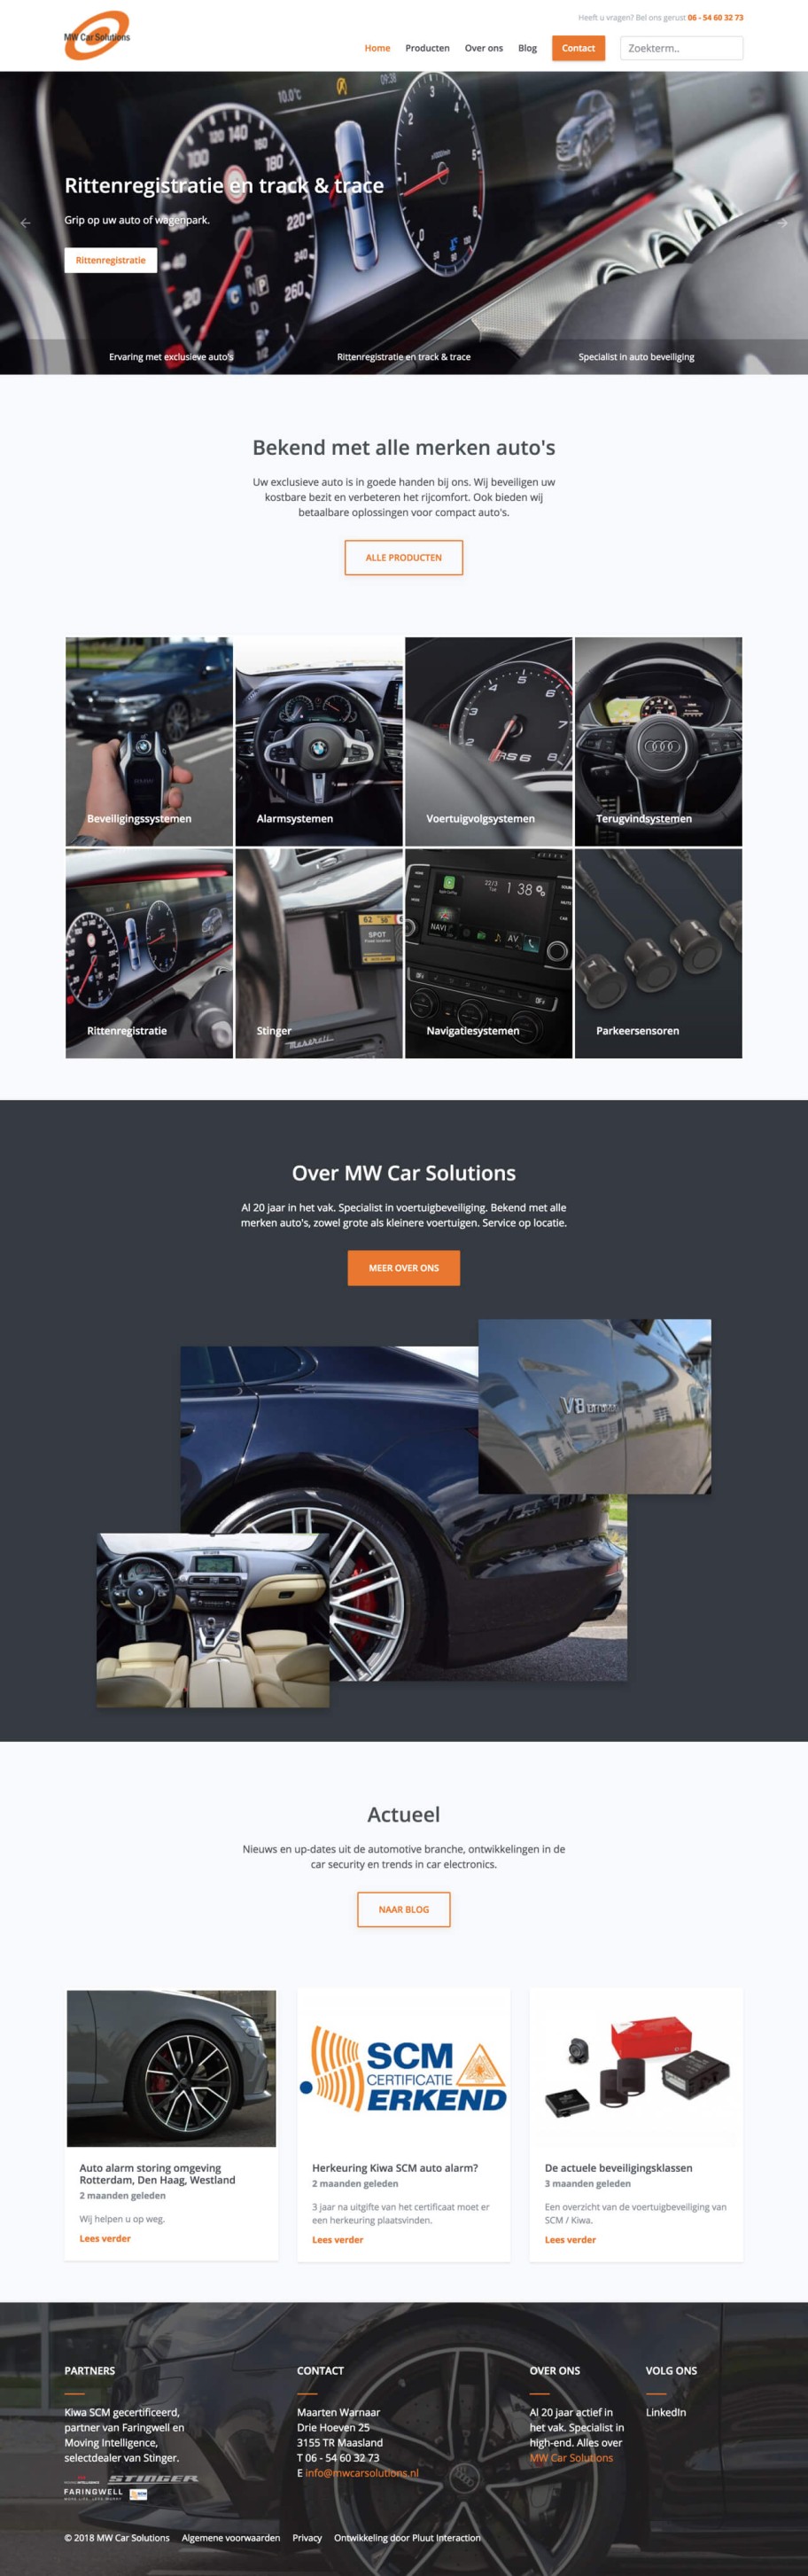 Grafisch ontwerp van MW Car Solutions website